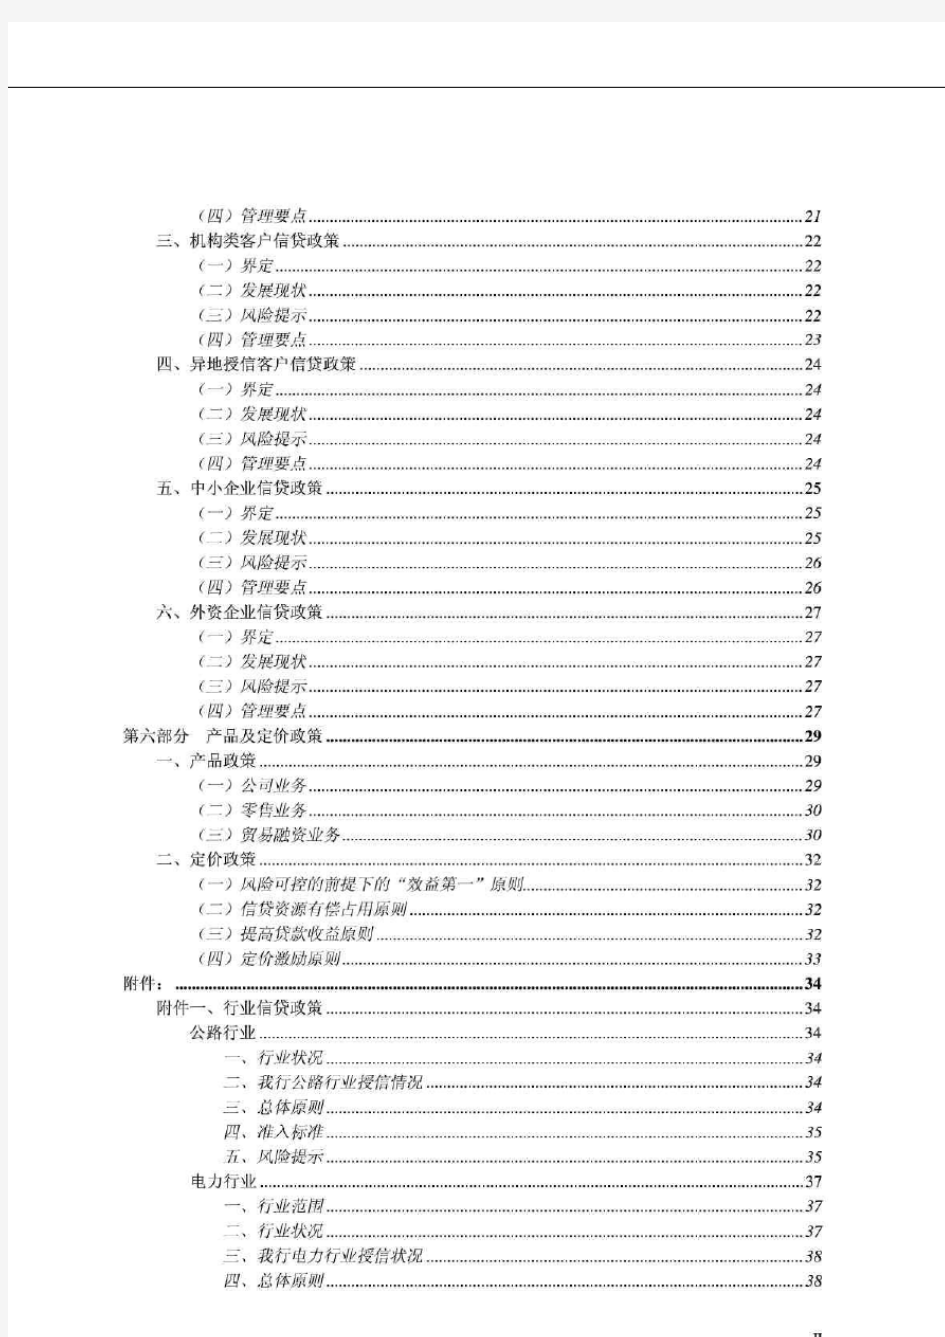 中信银行西安分行2008年信贷政策指引_智库文档